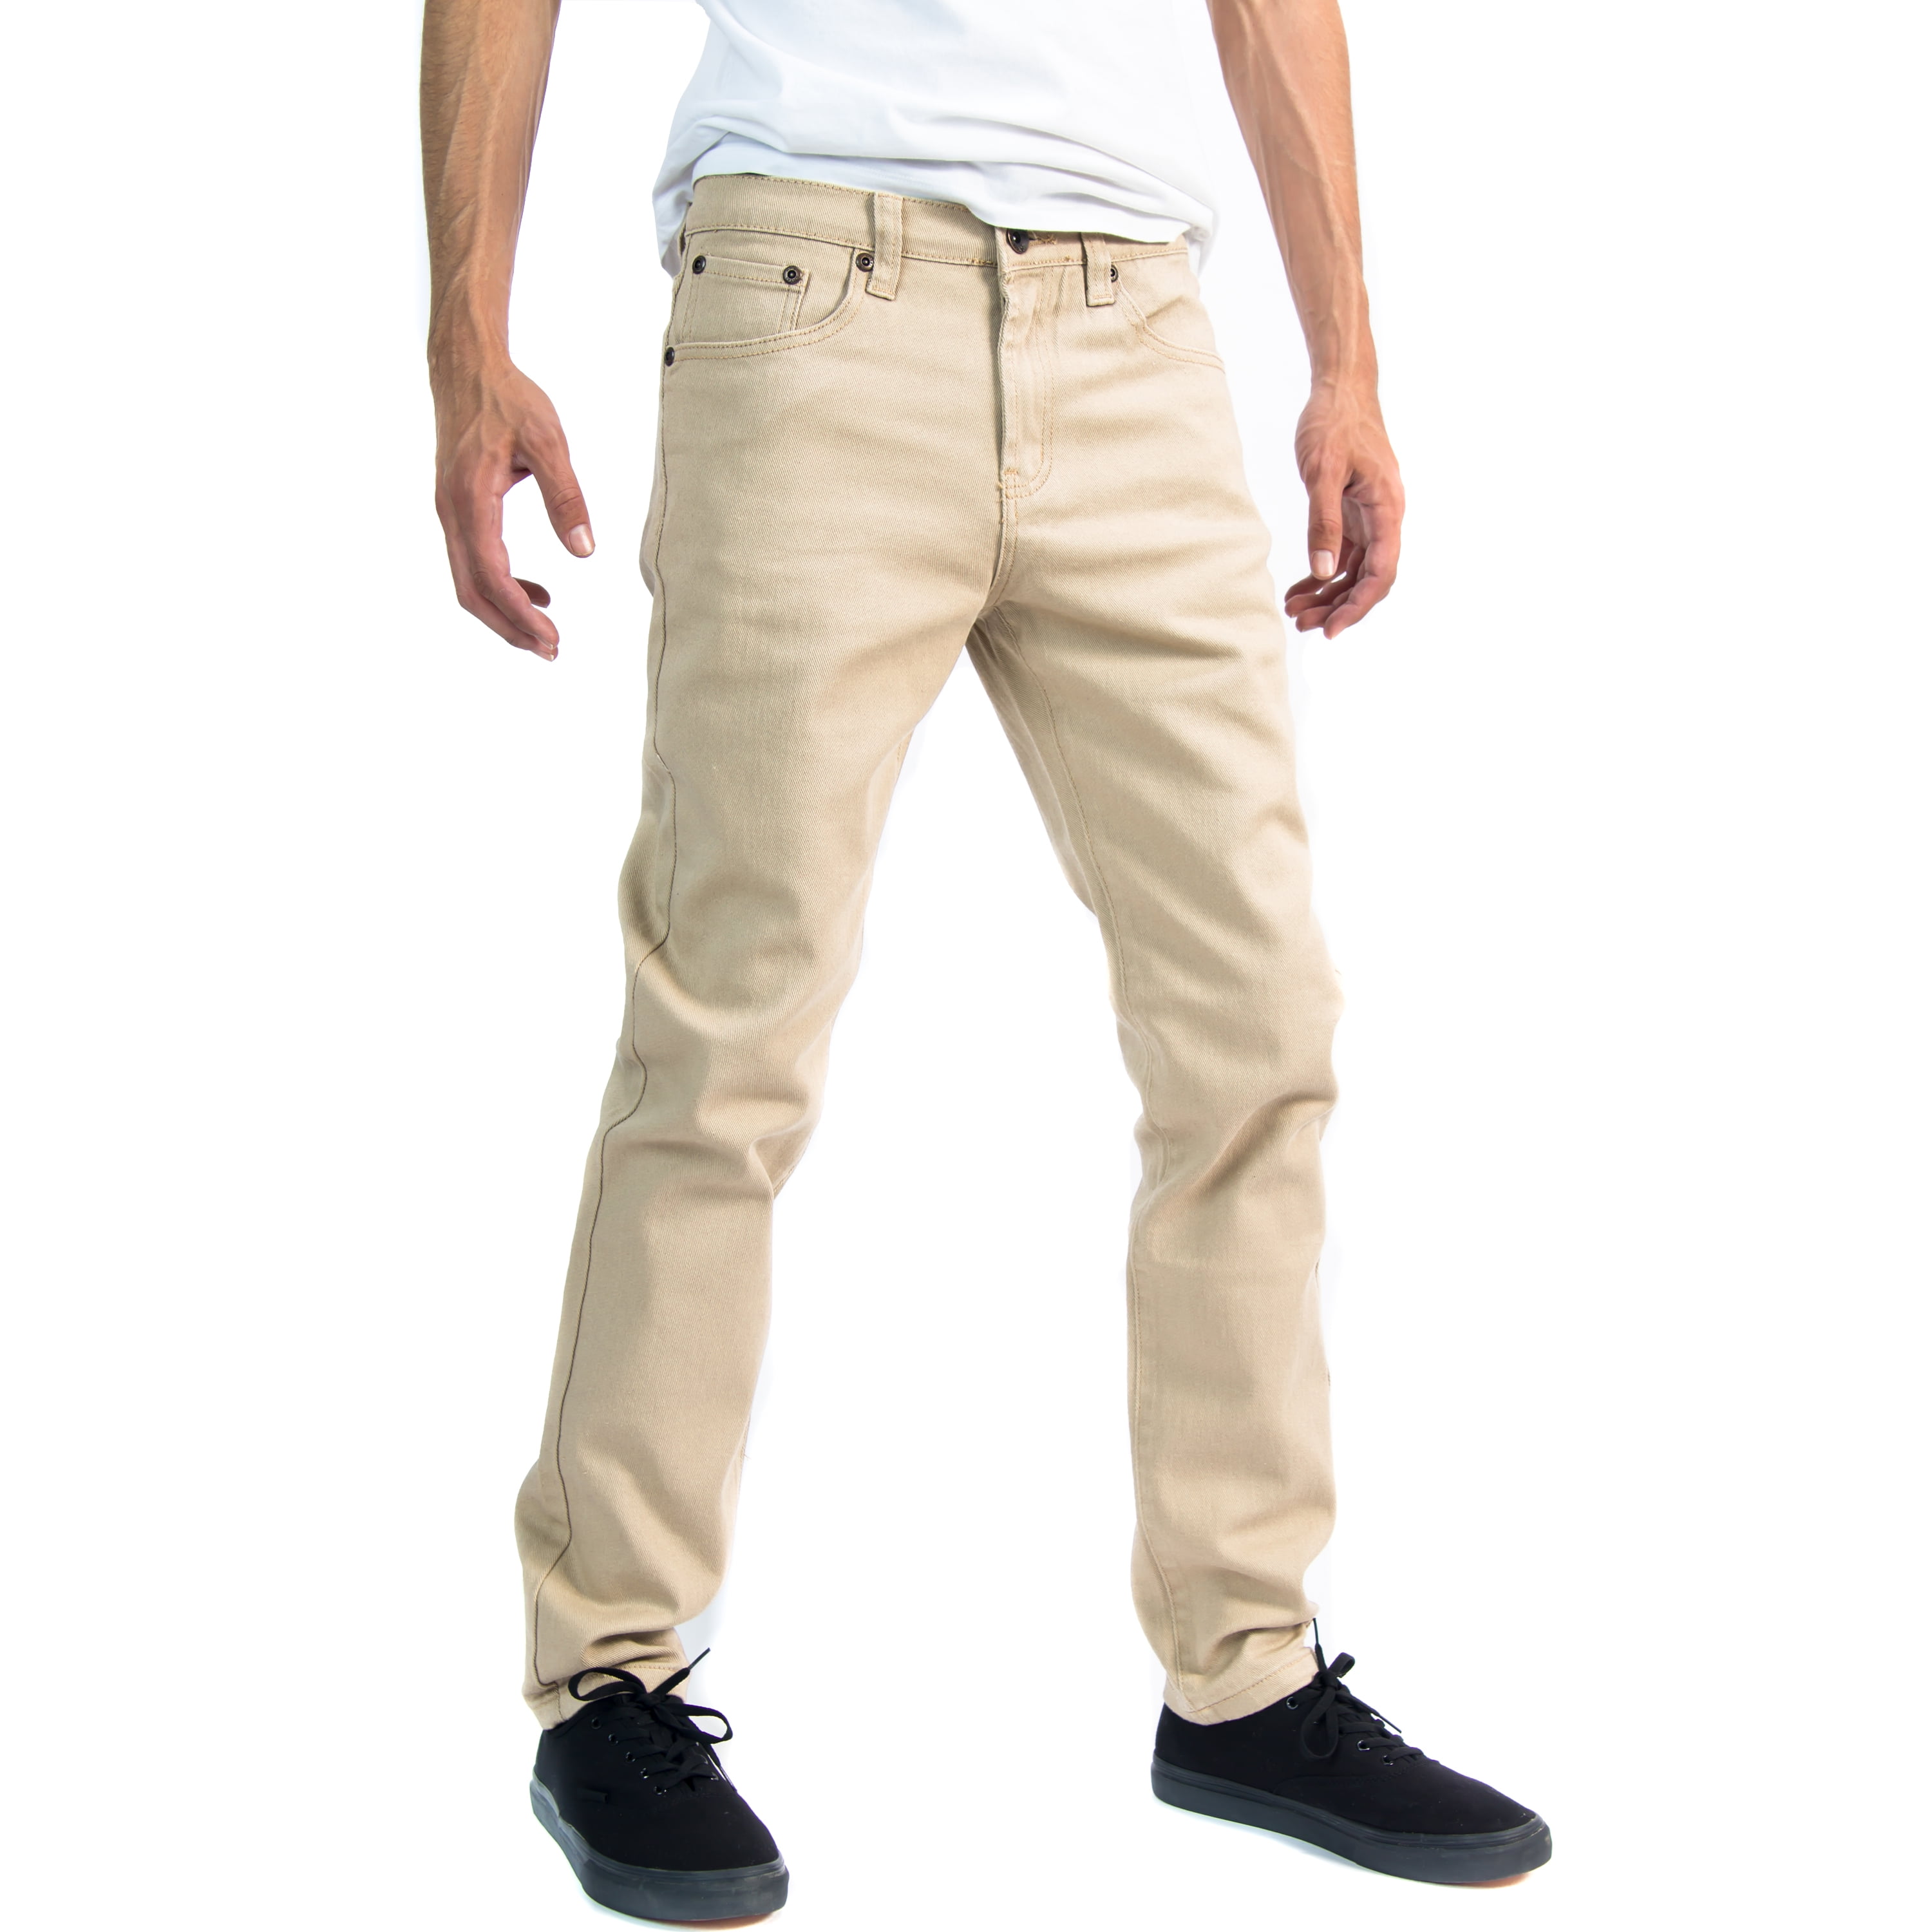 Rundt om Klemme Eksempel Alta Designer Fashion Mens Slim Fit Skinny Denim Jeans - Khaki - Size 38 -  Walmart.com